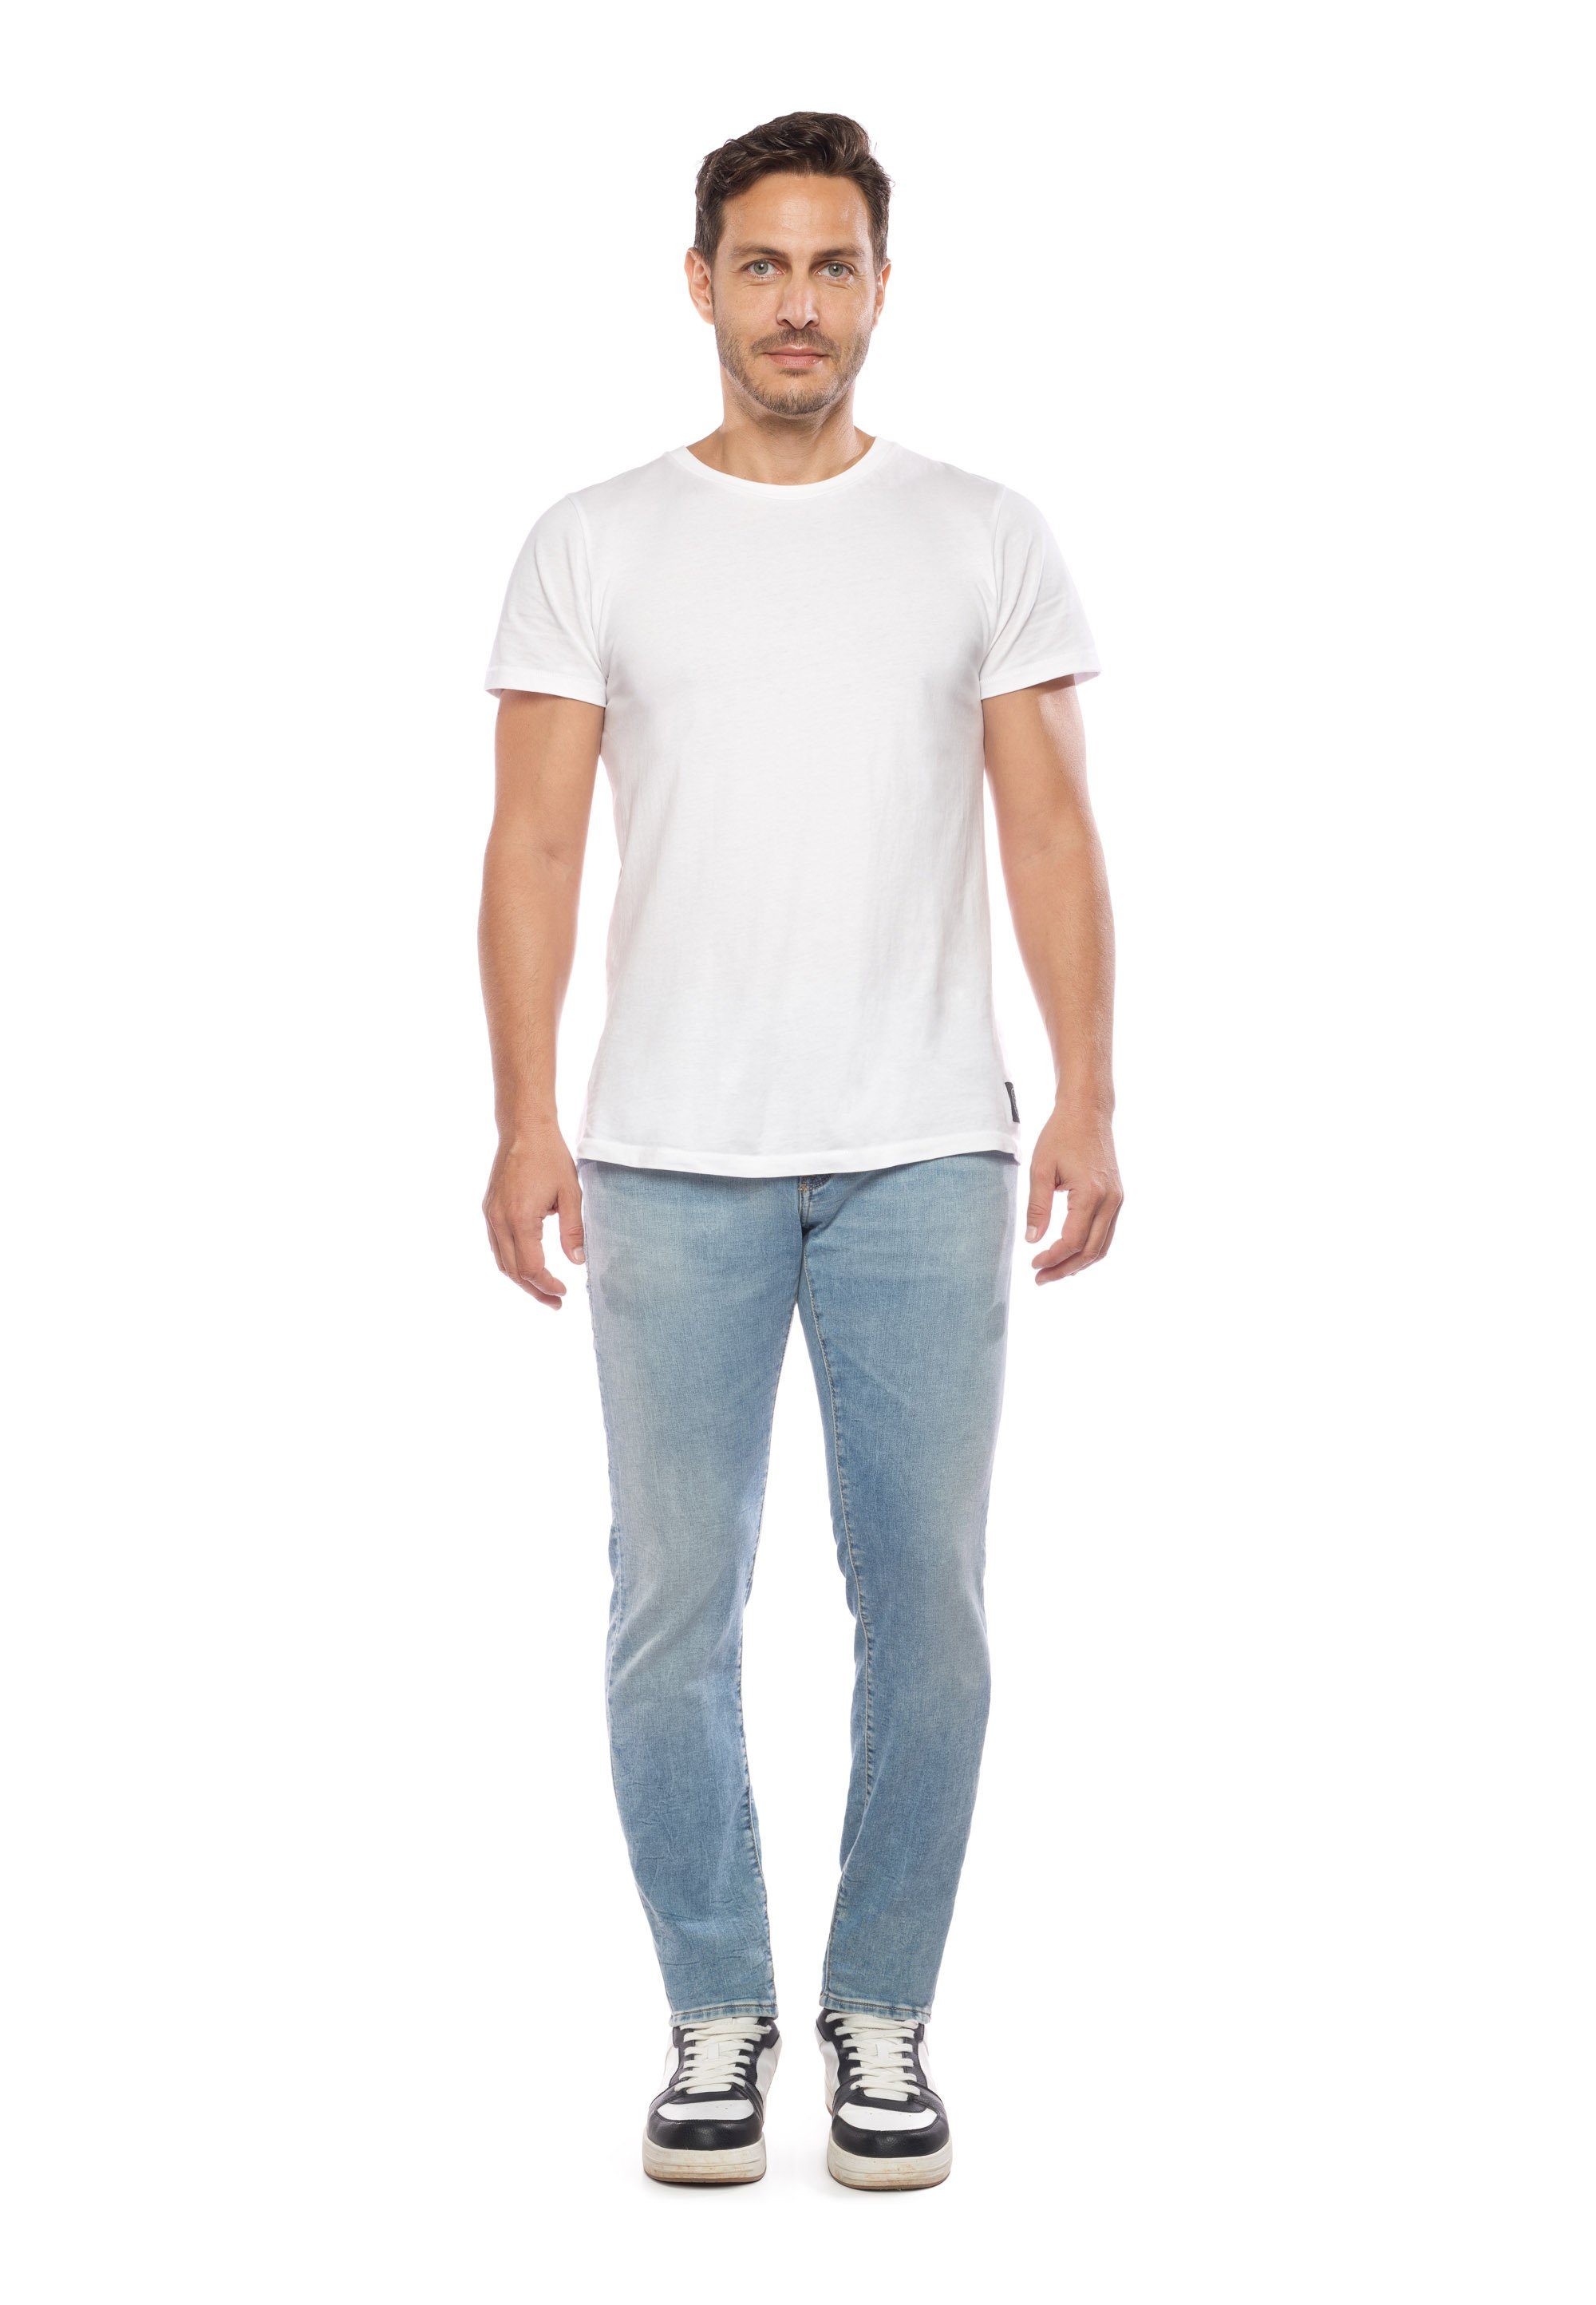 5-Pocket-Design Bequeme Jeans klassischen Des Temps Le im Cerises